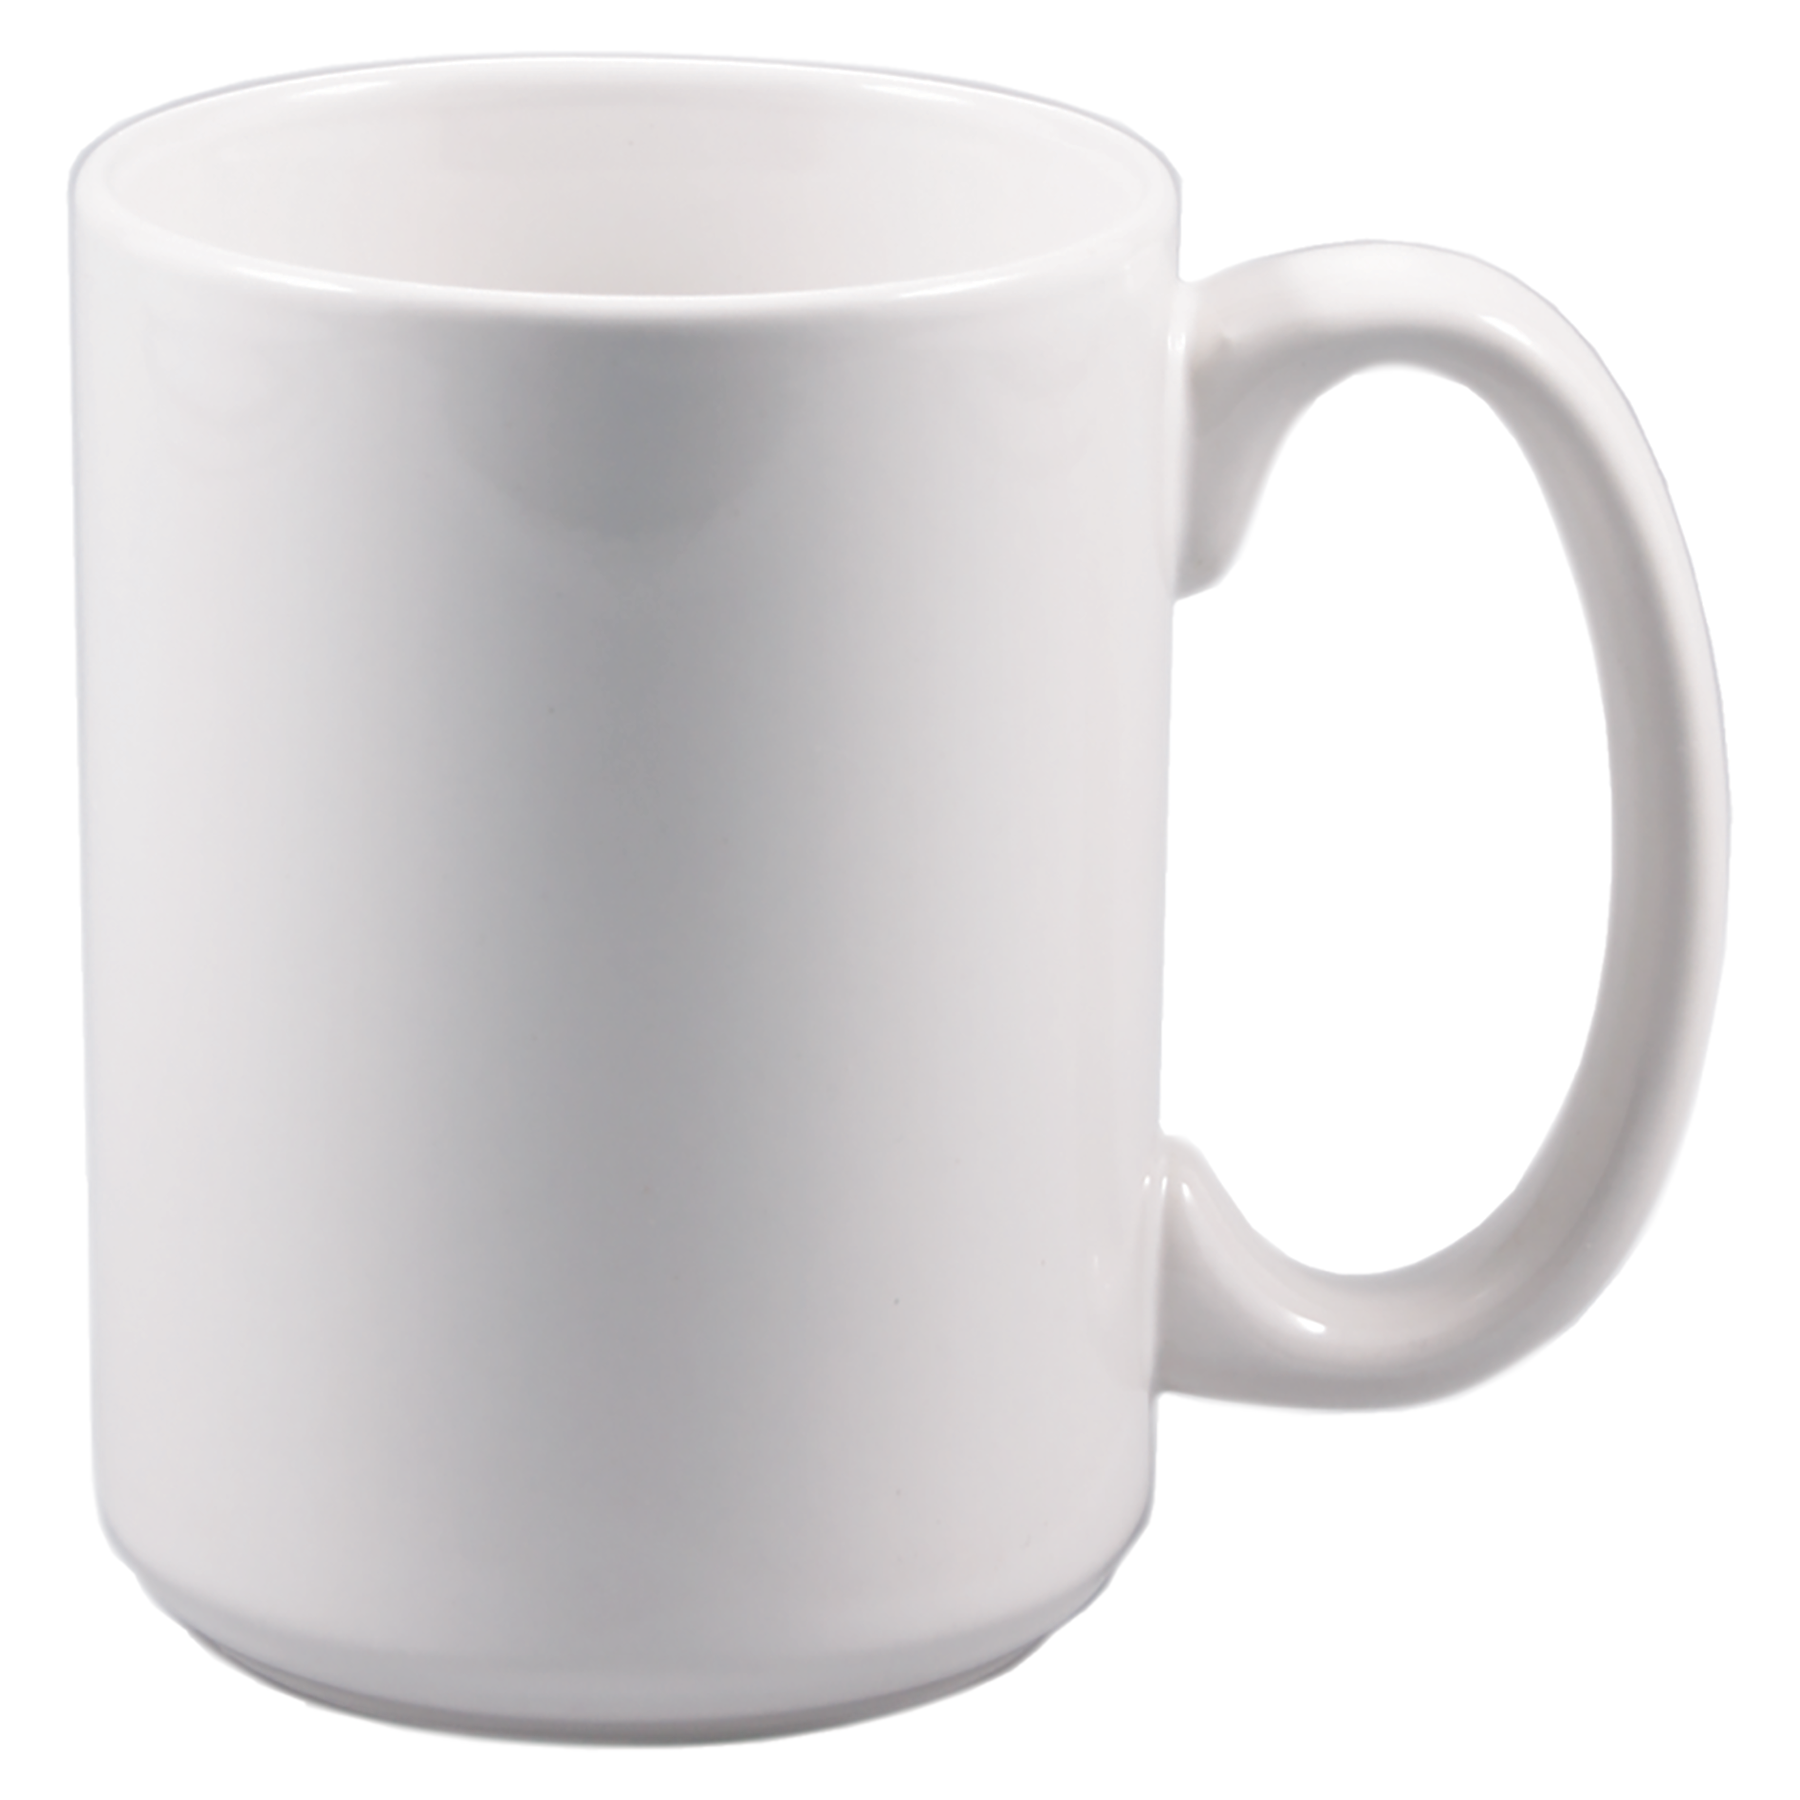 15 oz. White Sublimatable Ceramic Mug – The Blank Stockpile